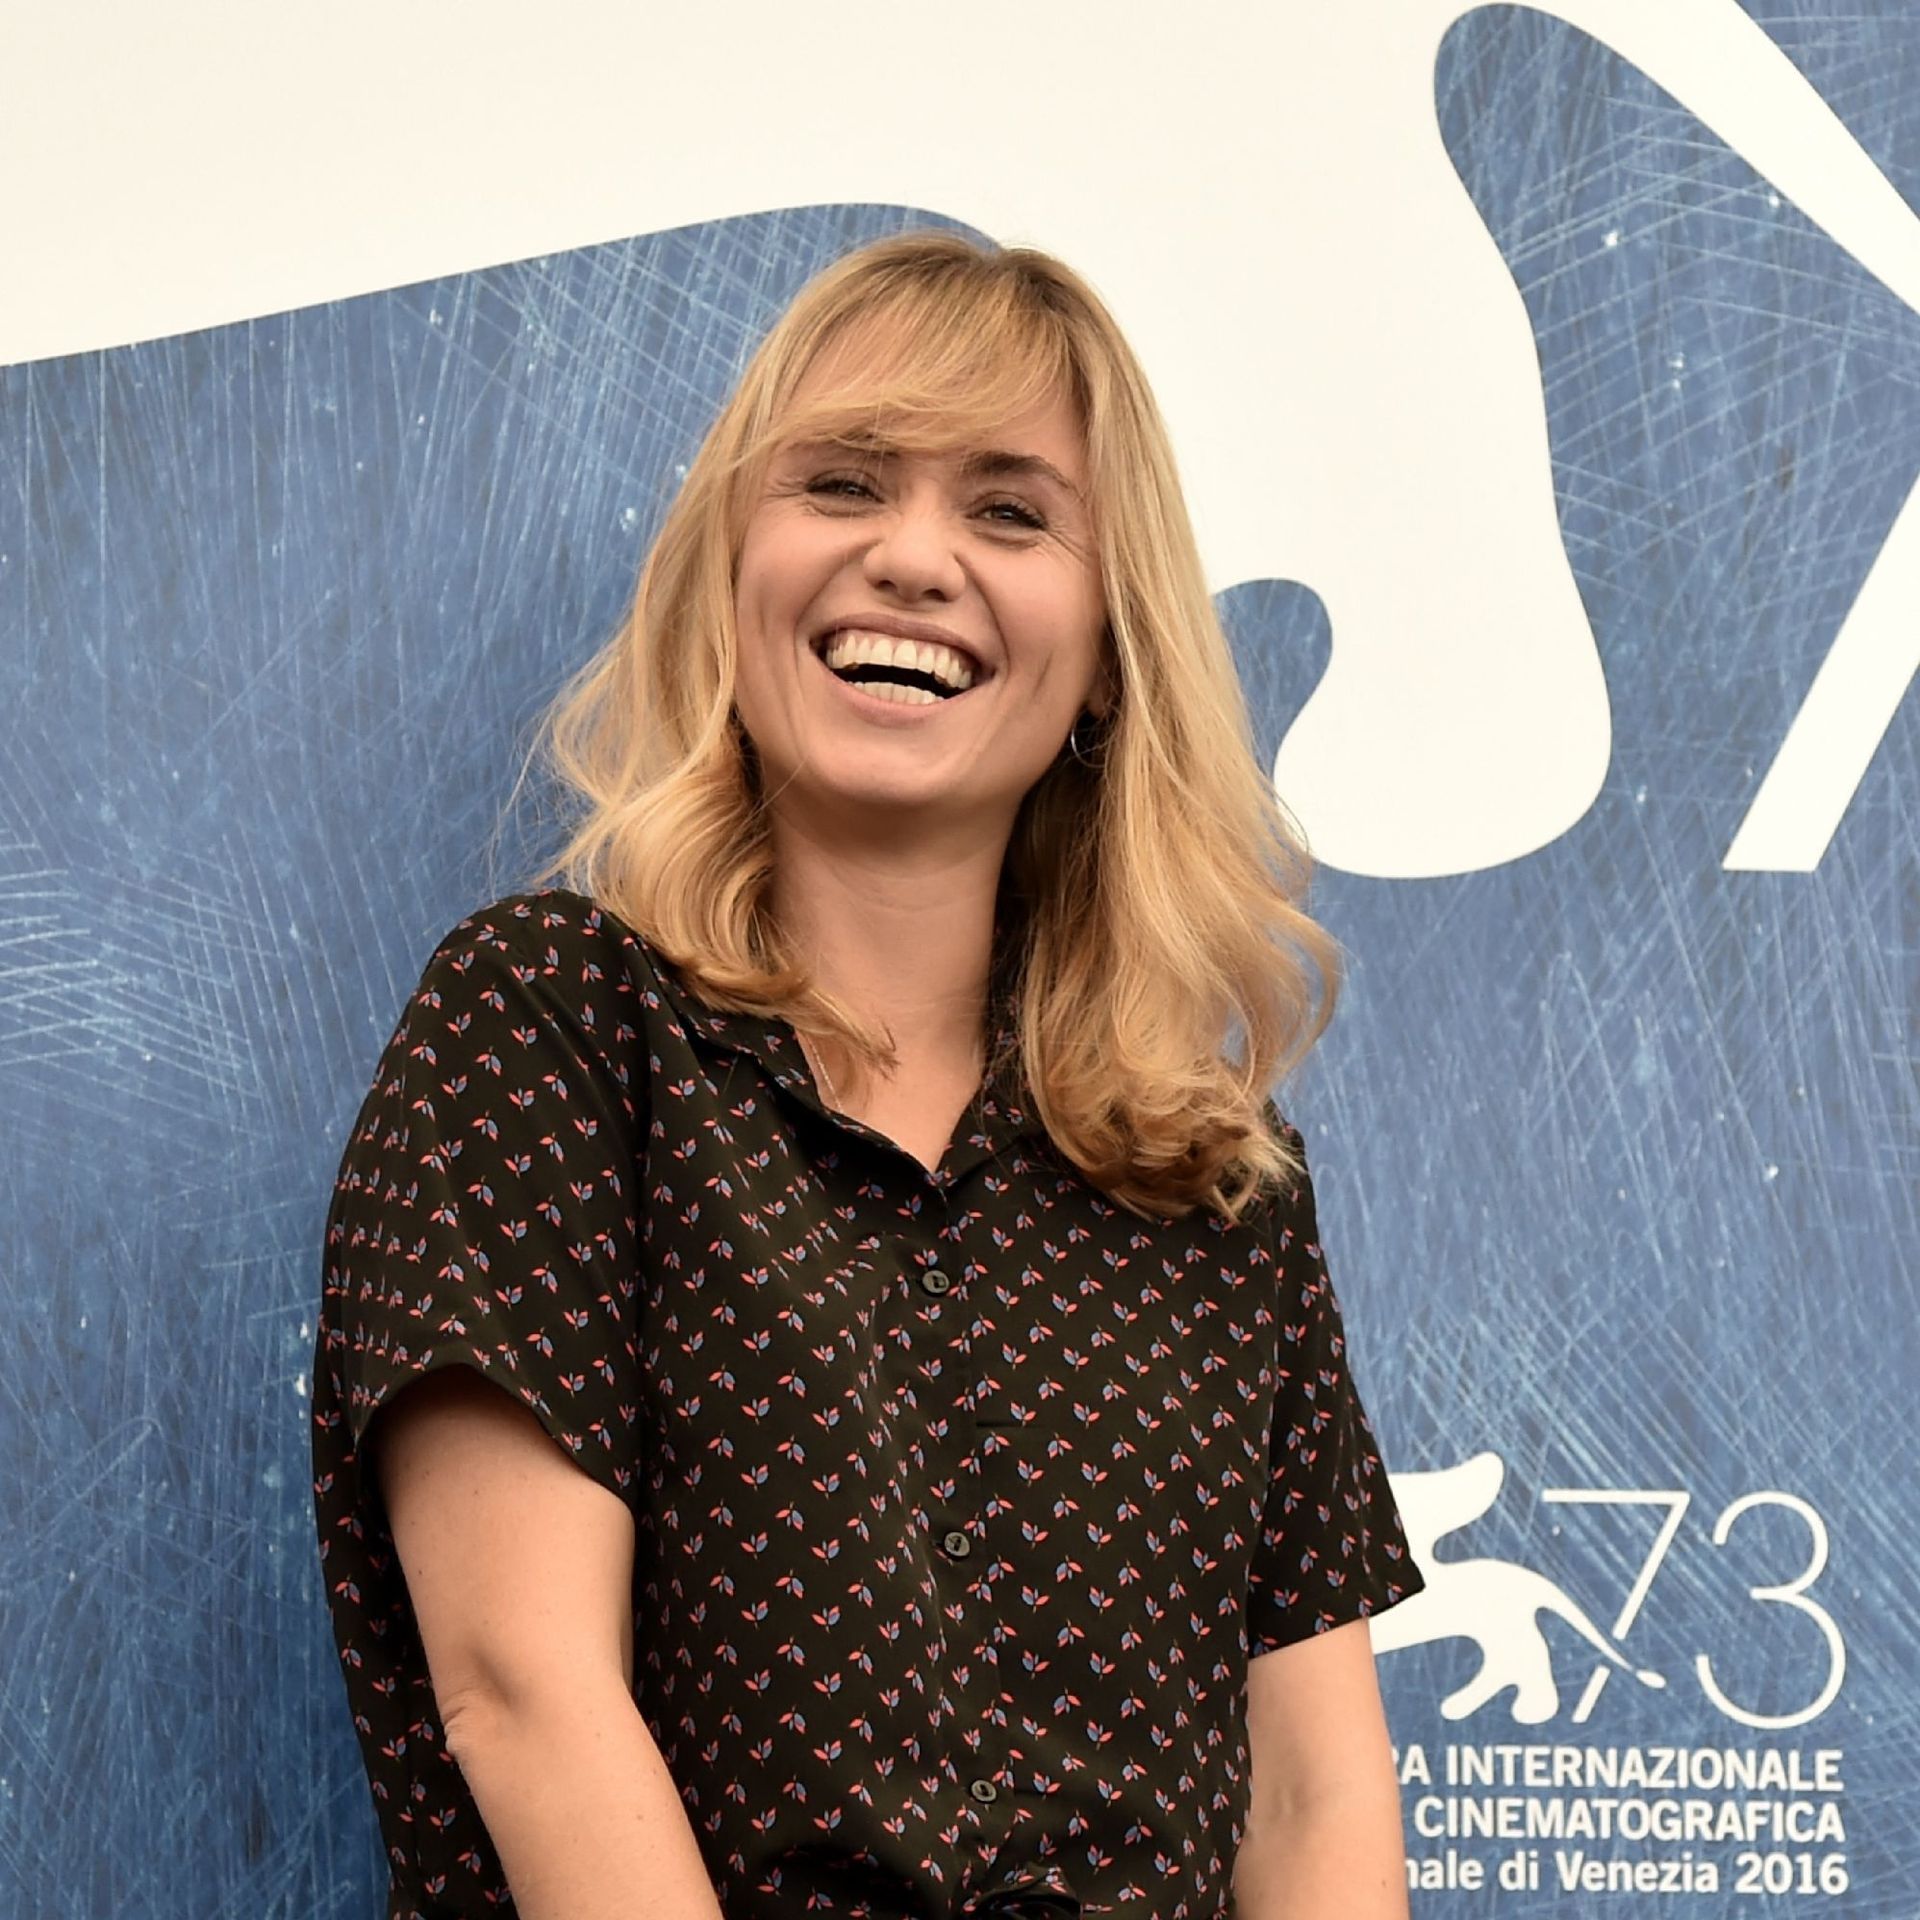 La réalisatrice Katell Quillevere présentera son film "Le Temps d'aimer" à Cannes dans le cadre de Cannes Première.